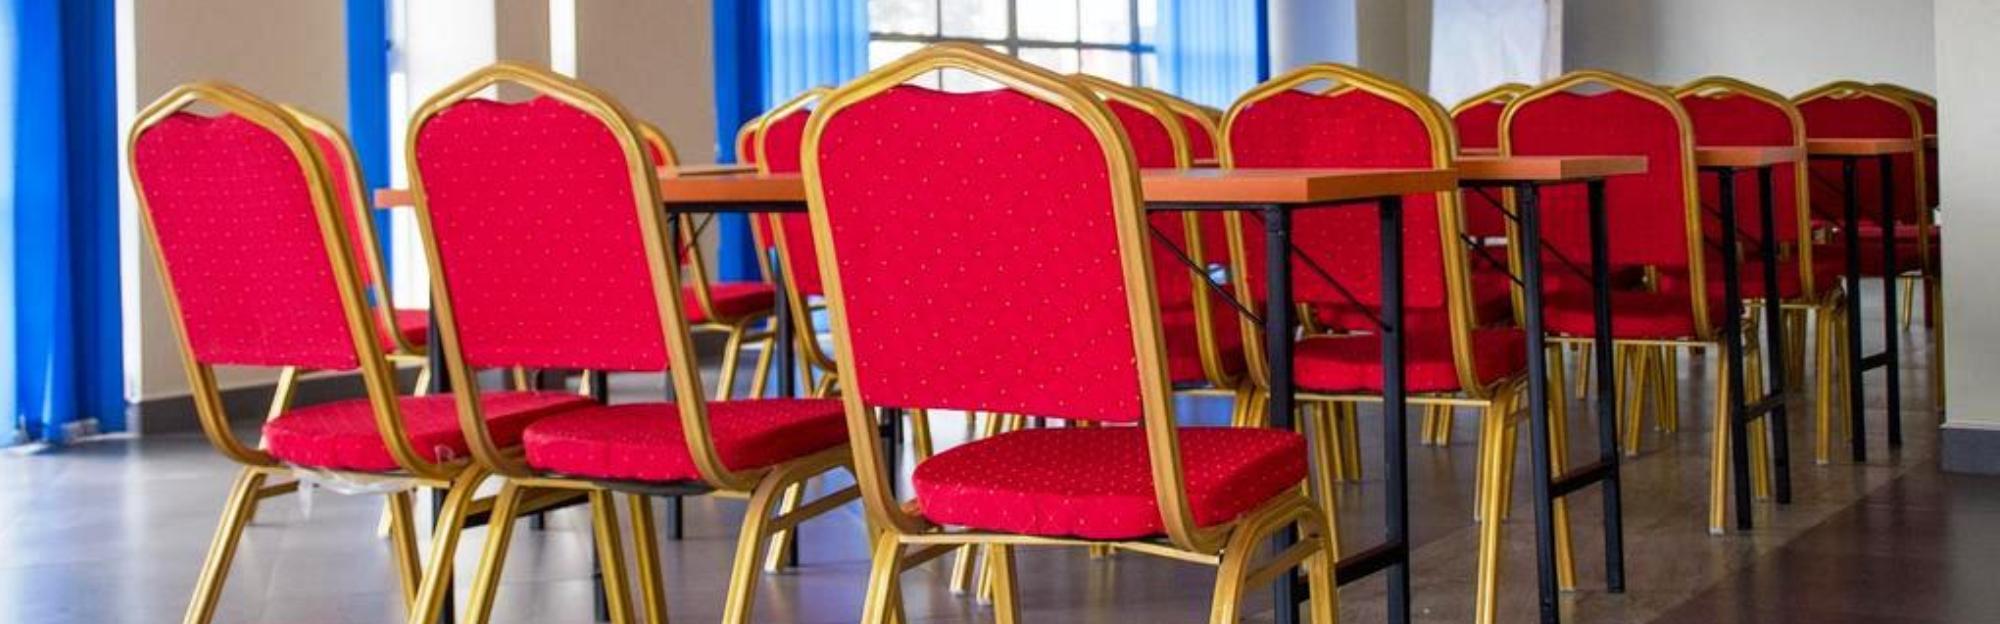 Kenendia Hotel Conferences & Parties